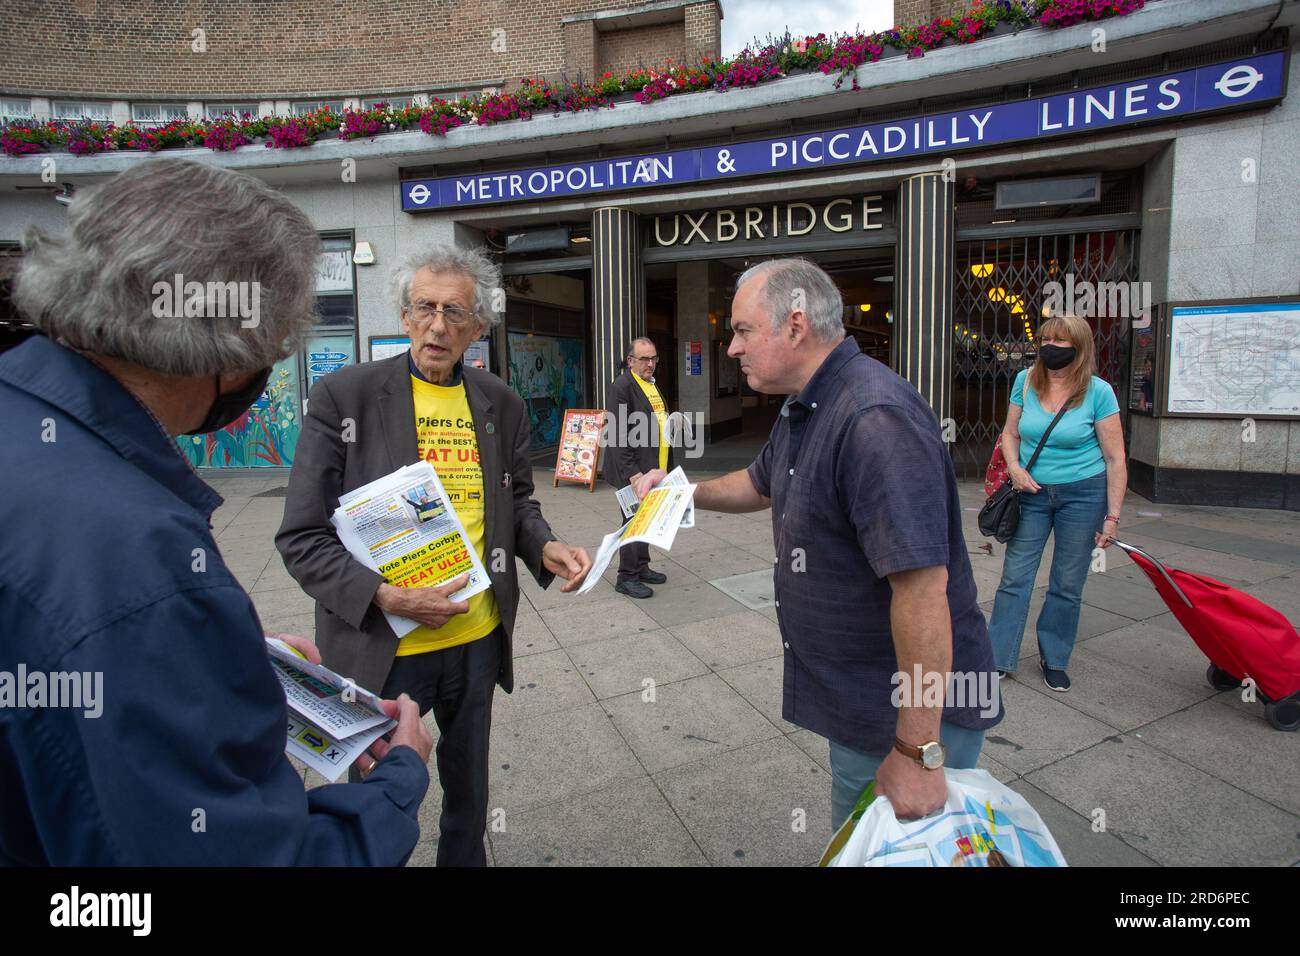 Uxbridge, Royaume-Uni. 18 juillet 2023. Deux jours avant l'élection partielle politique, Piers Corbyn, candidat à l'élection partielle pour Uxbridge et South Ruislip à l'extérieur de la station de métro Uxbridge, le 18 juillet 2023, à Londres, Angleterre. La circonscription d'Uxbridge et de South Ruislip est l'une des trois élections partielles locales tenues le même jour, mais Uxbridge a été représentée au Parlement par l'ancien Premier ministre conservateur Boris Johnson pendant huit ans avant de démissionner de son poste de député. Il sera contesté par 17 candidats le 20 juillet. Crédit : horst friedrichs/Alamy Live News Banque D'Images